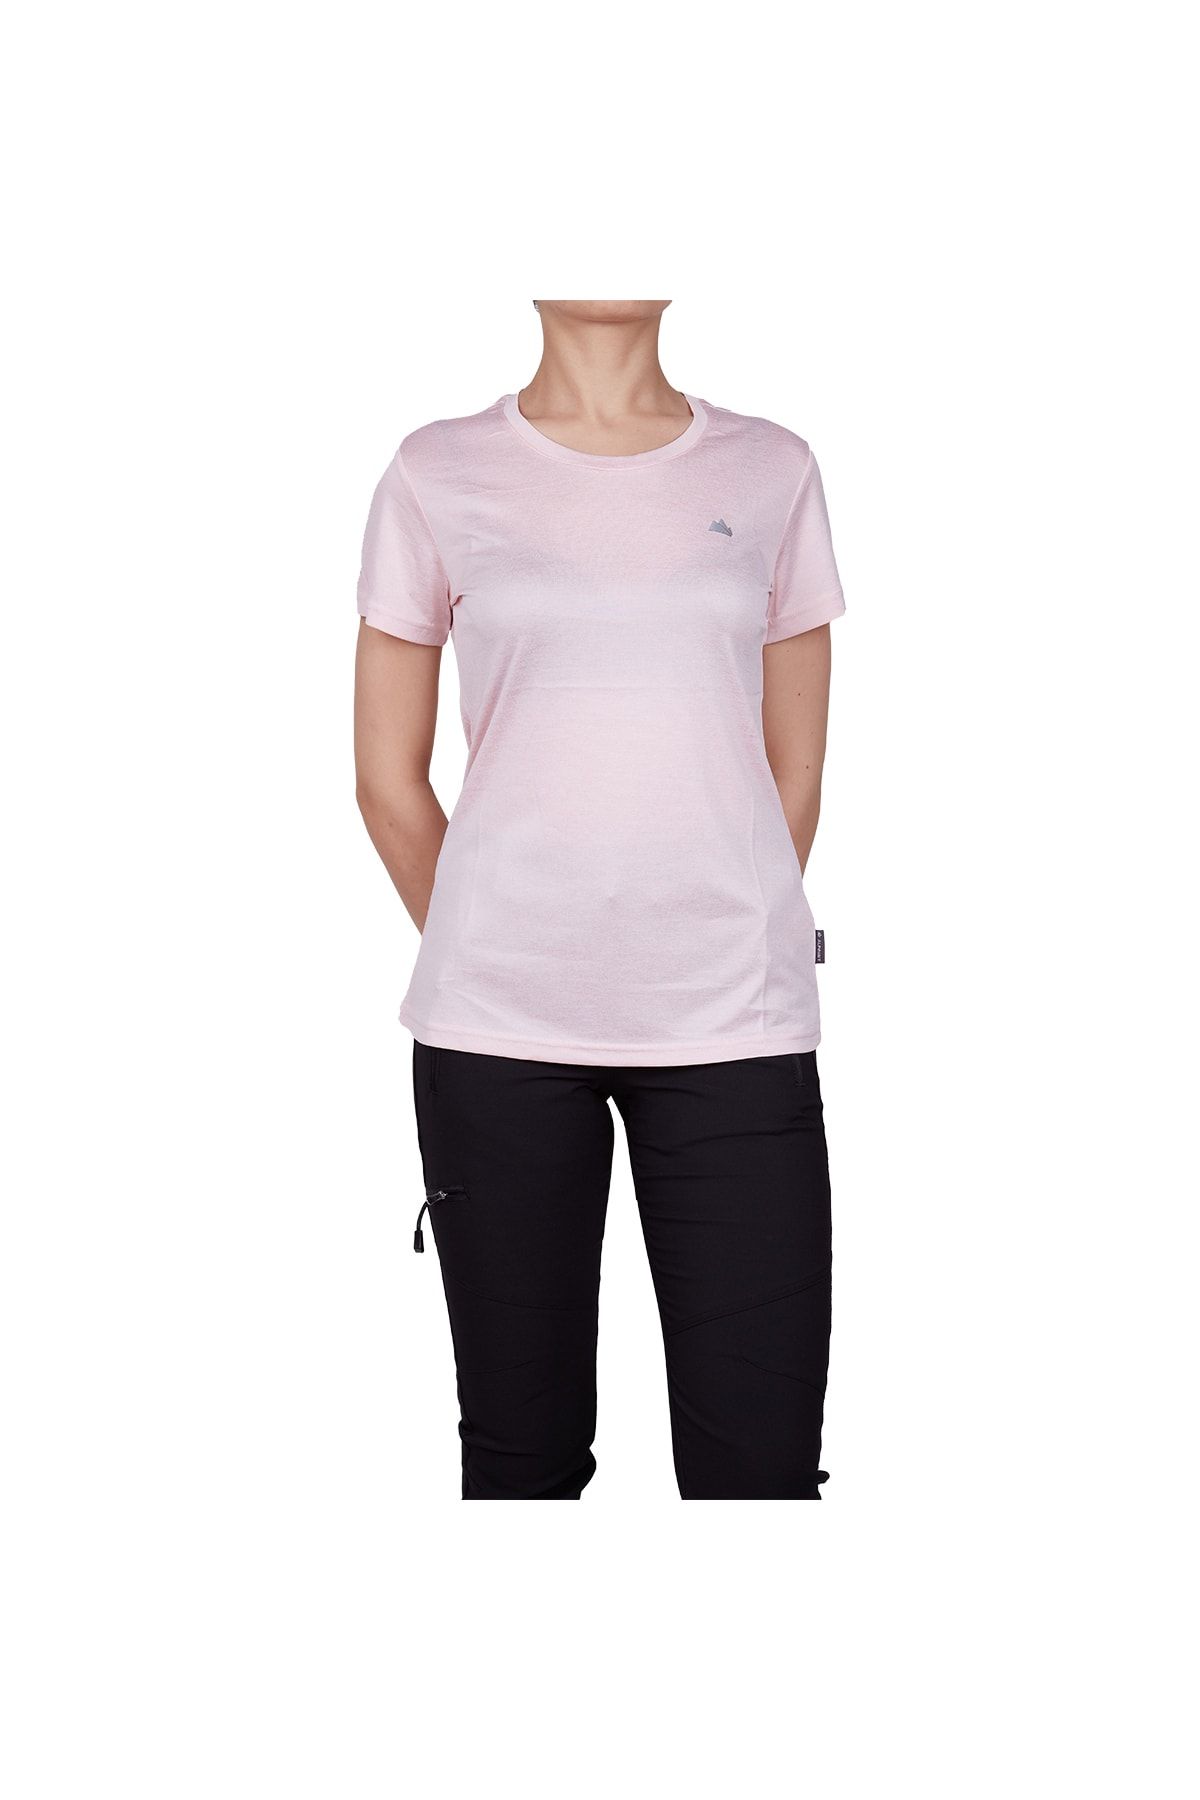 Alpinist Lumi Kadın T-shirt Pembe